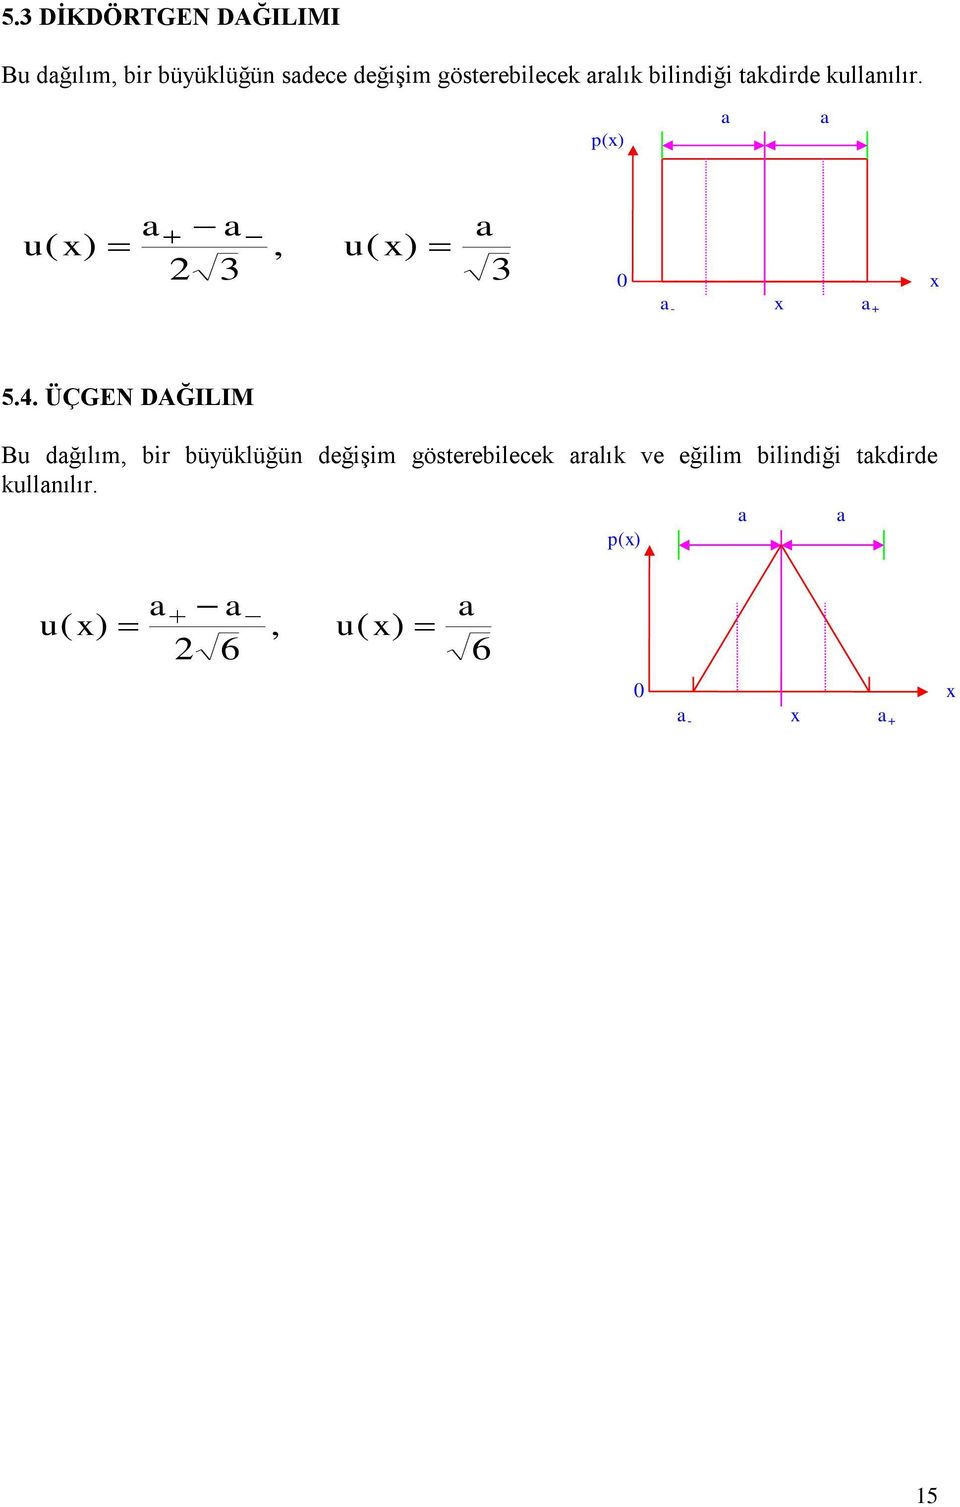 p(x) a a a a a u( x), u( x) 3 3 0 x a - x a + 5.4.